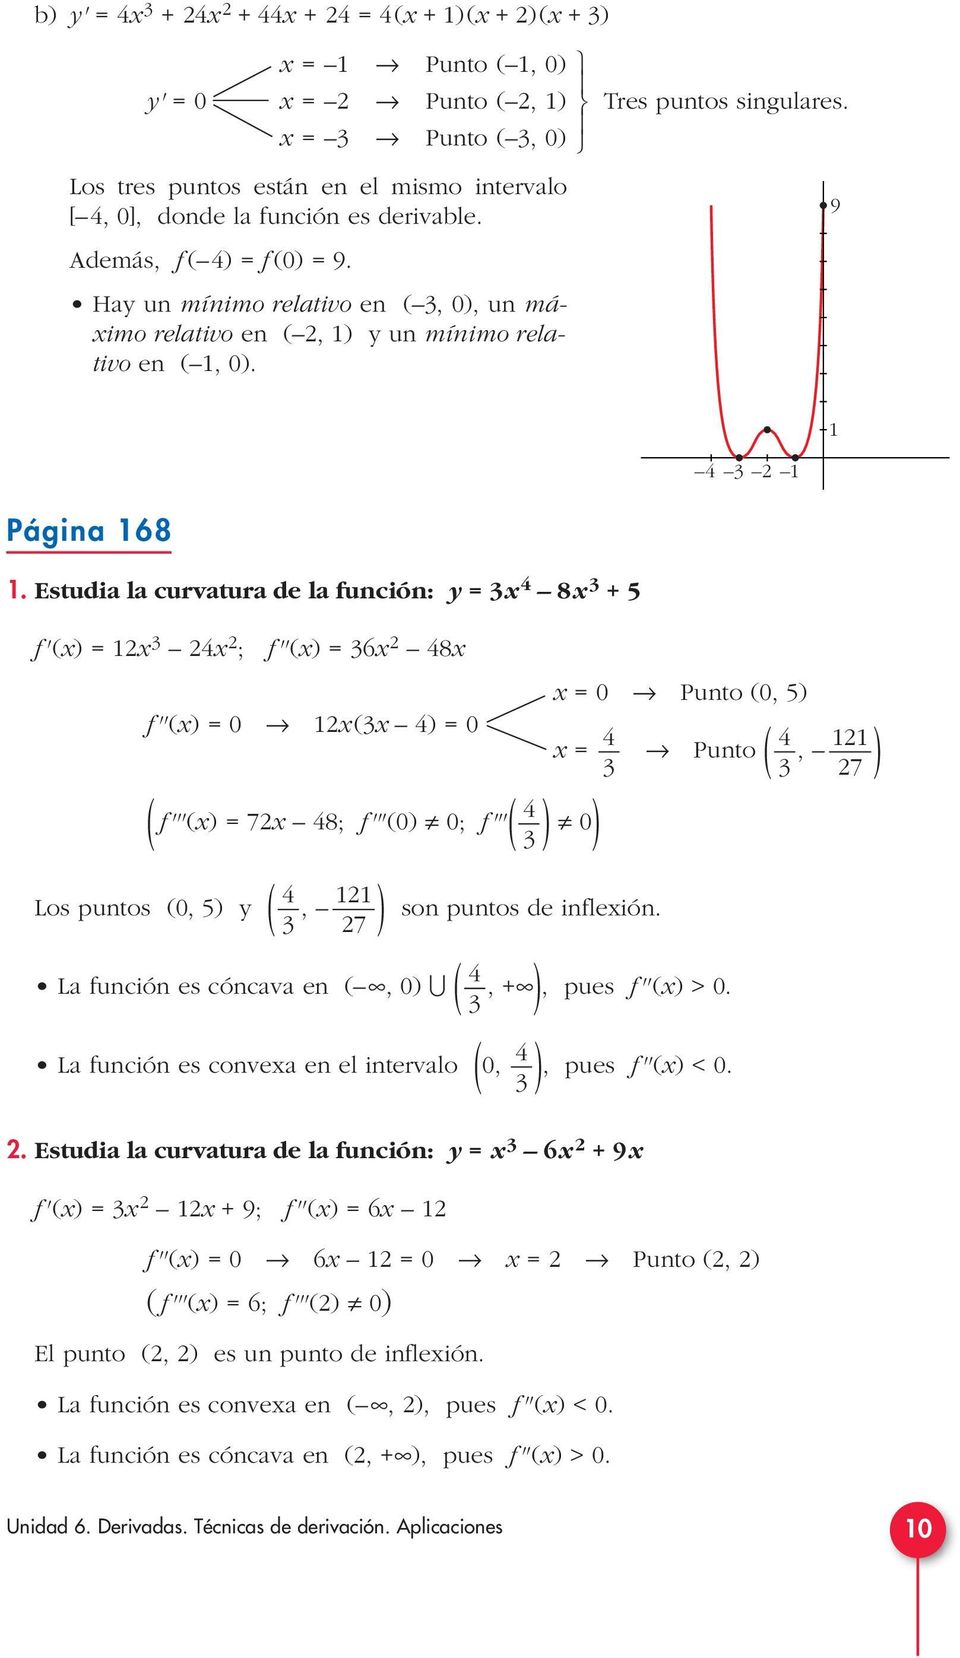 Estudia la curvatura de la función: y 8 + 5 f'() ; f''() 6 8 0 Punto (0, 5) f''() 0 ( ) 0 Punto (, 7 ) ( f'''() 7 8; f'''(0) 0; f'''( ) 0) Los puntos (0, 5) y (, ) son puntos de infleión.